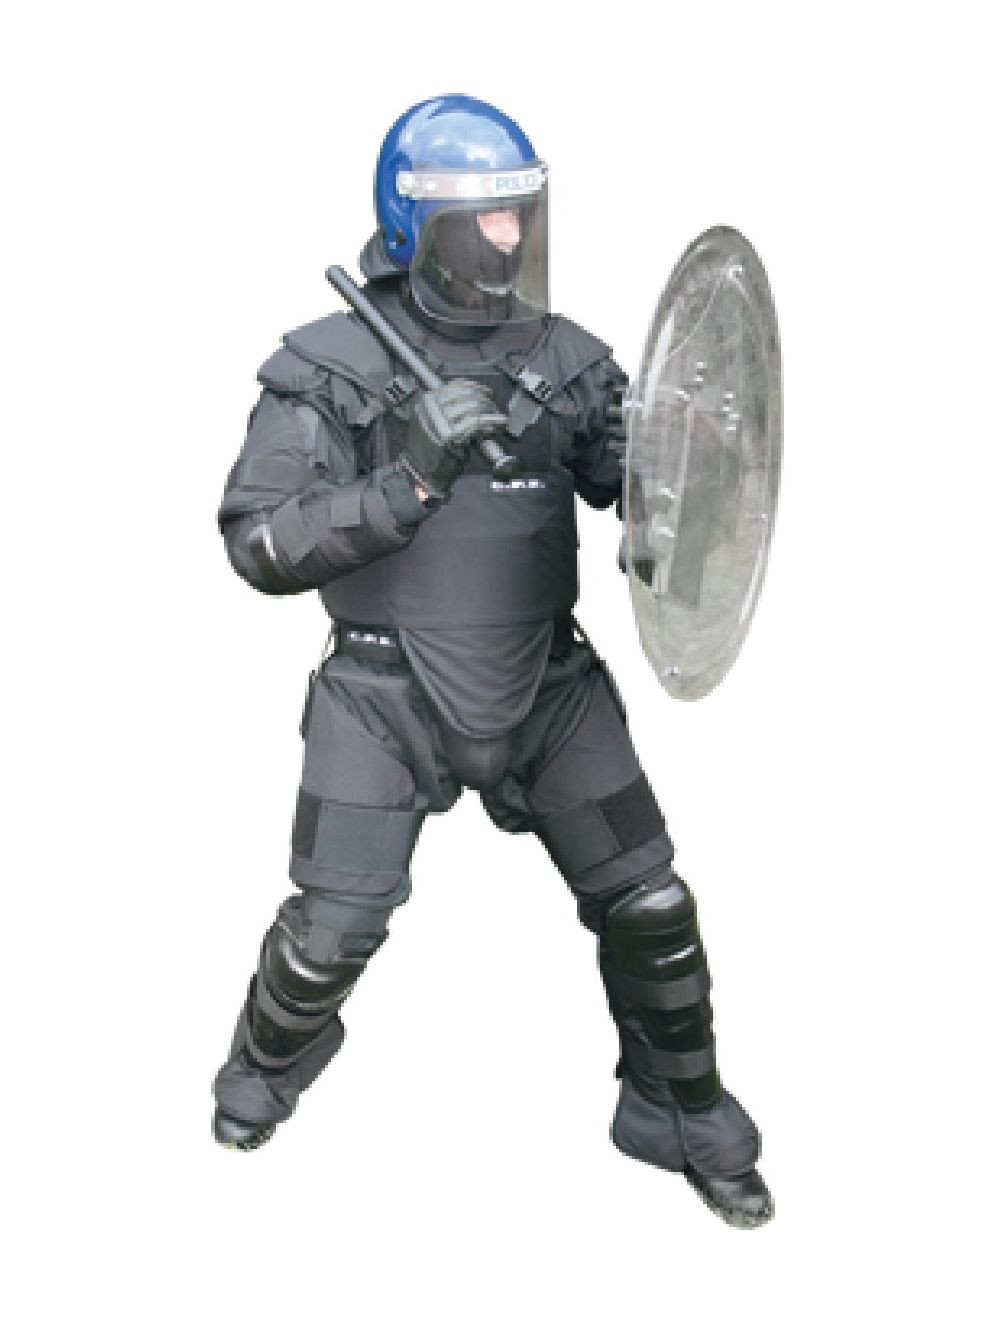 Round Riot Shield | Police Equipment Worldwide